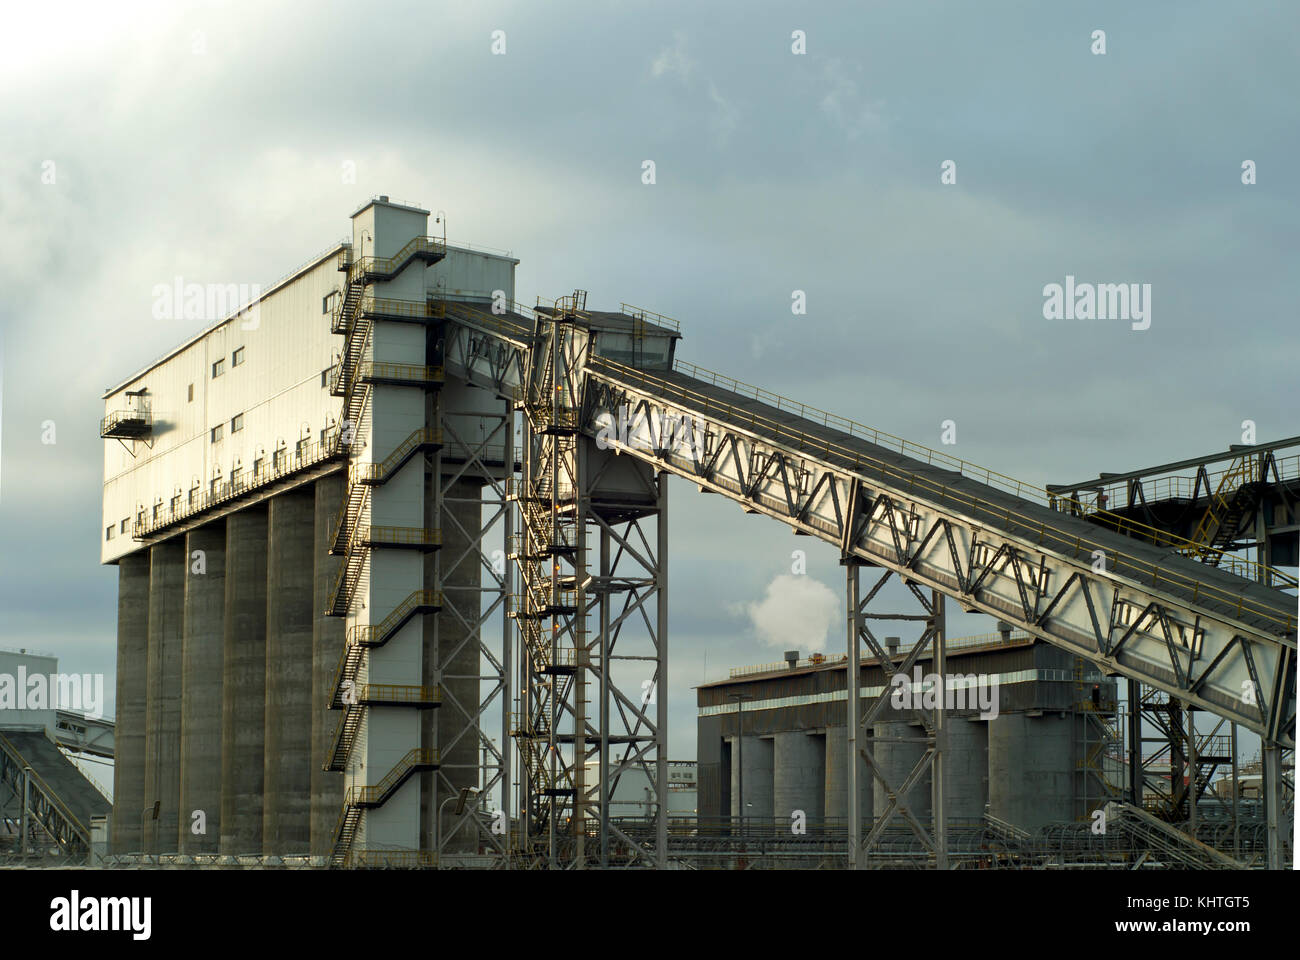 Fragment d'une entreprise industrielle moderne avec des silos pour le stockage de matériaux en vrac et d'un convoyeur à bande incliné couvert Banque D'Images